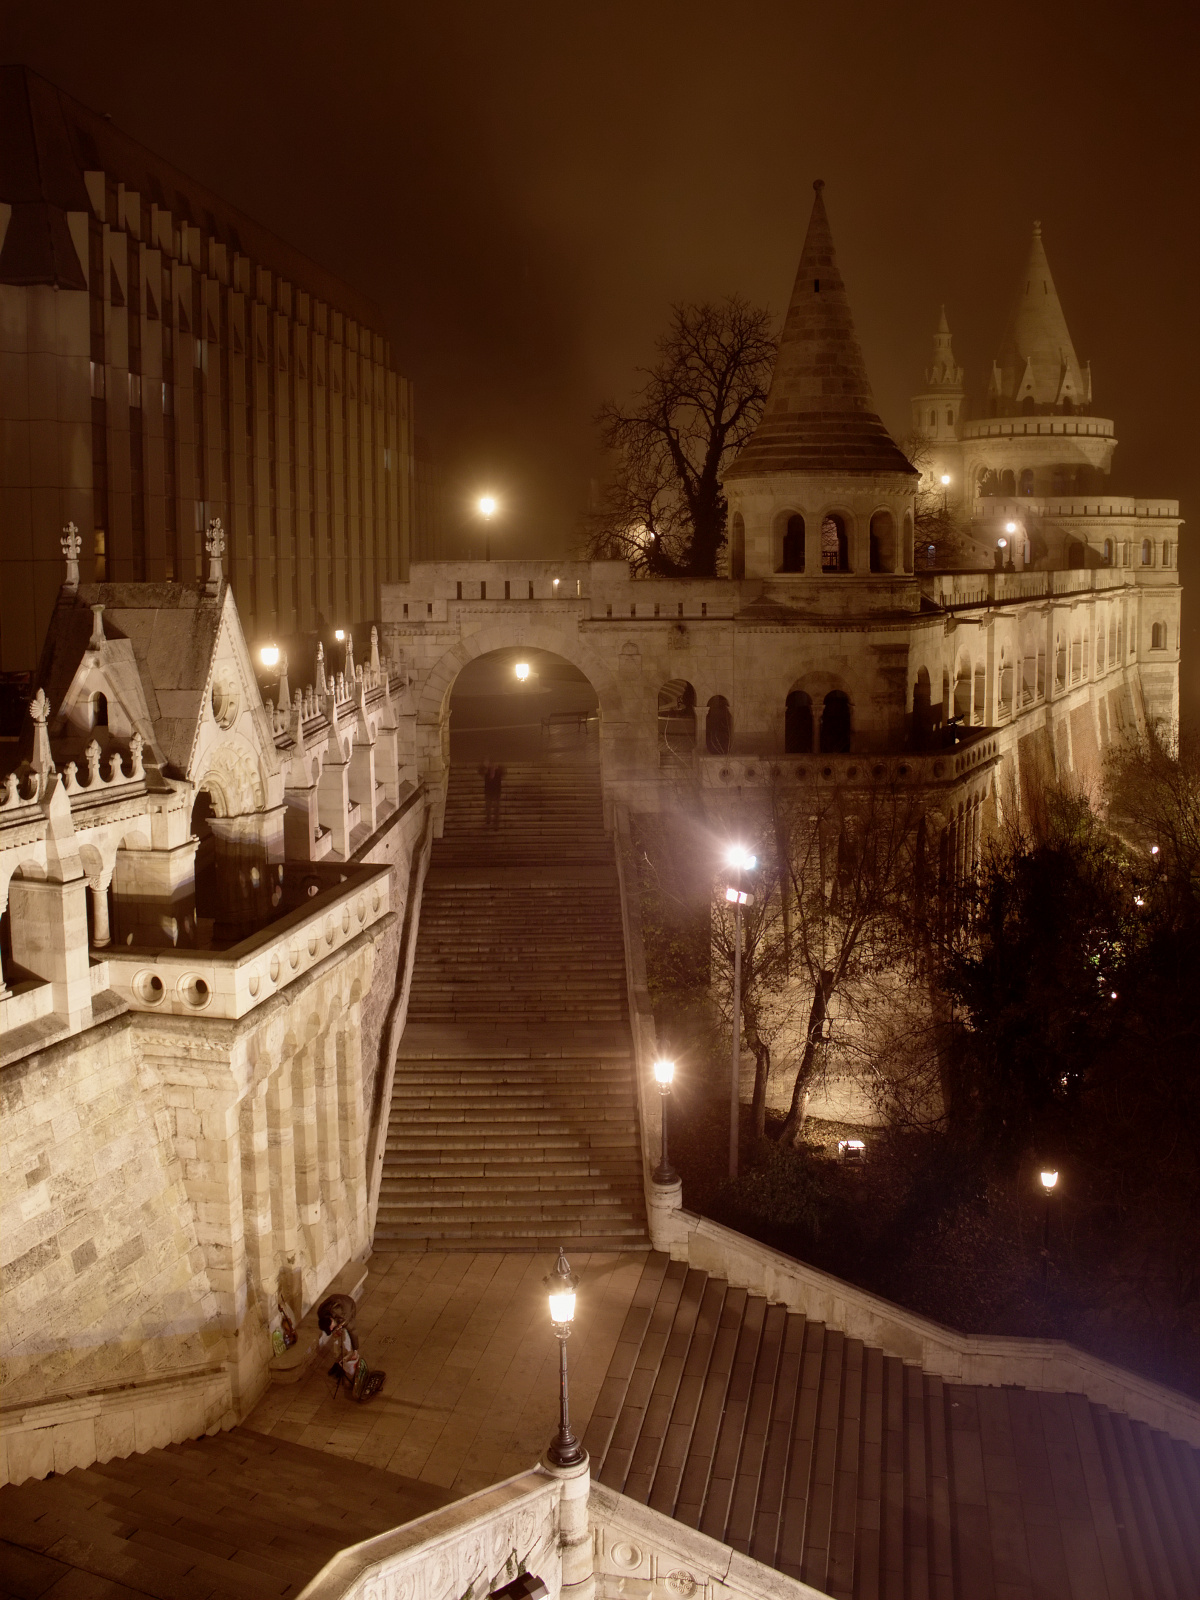 Halaszbastya - Fisherman's Bastion (Travels » Budapest » Budapest at Night)